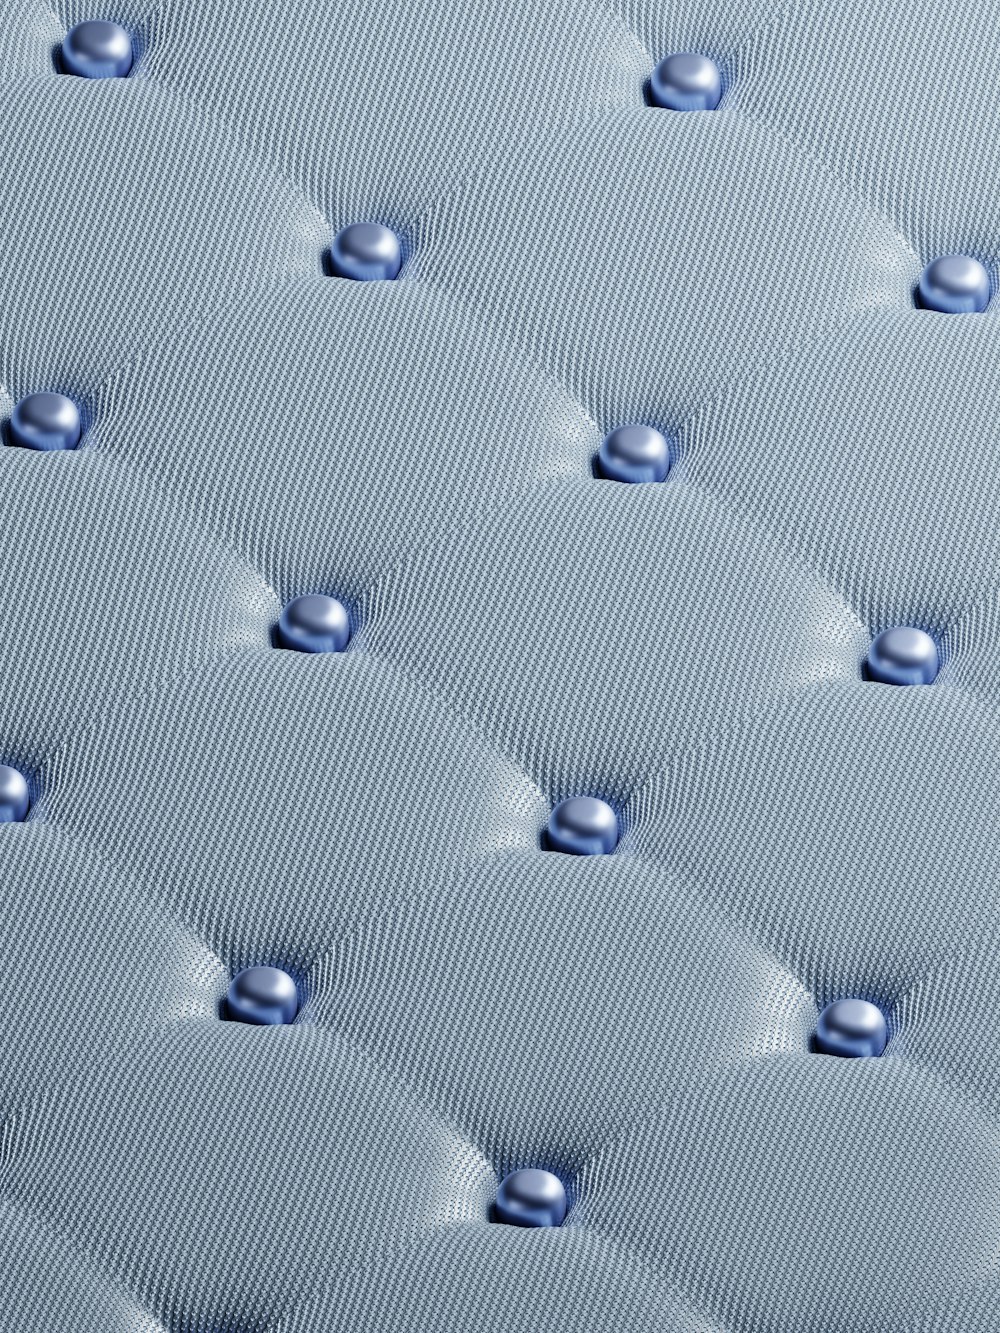 a close up view of a blue mattress